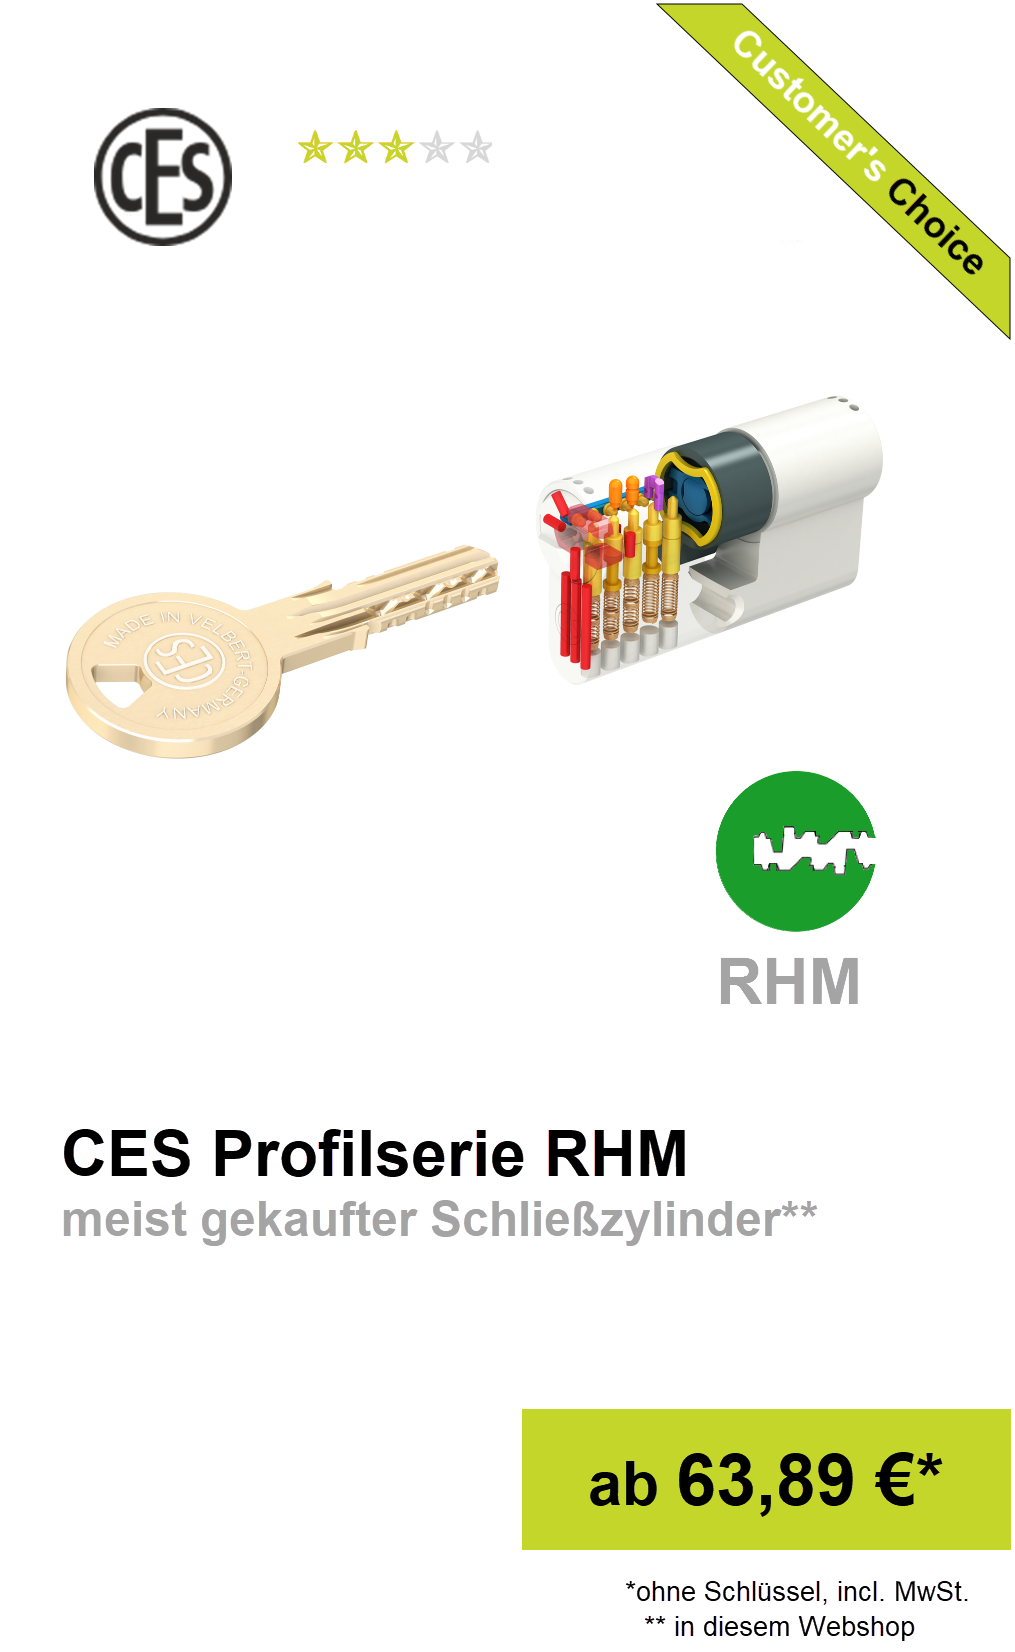 Schließzylinder RHM online shop